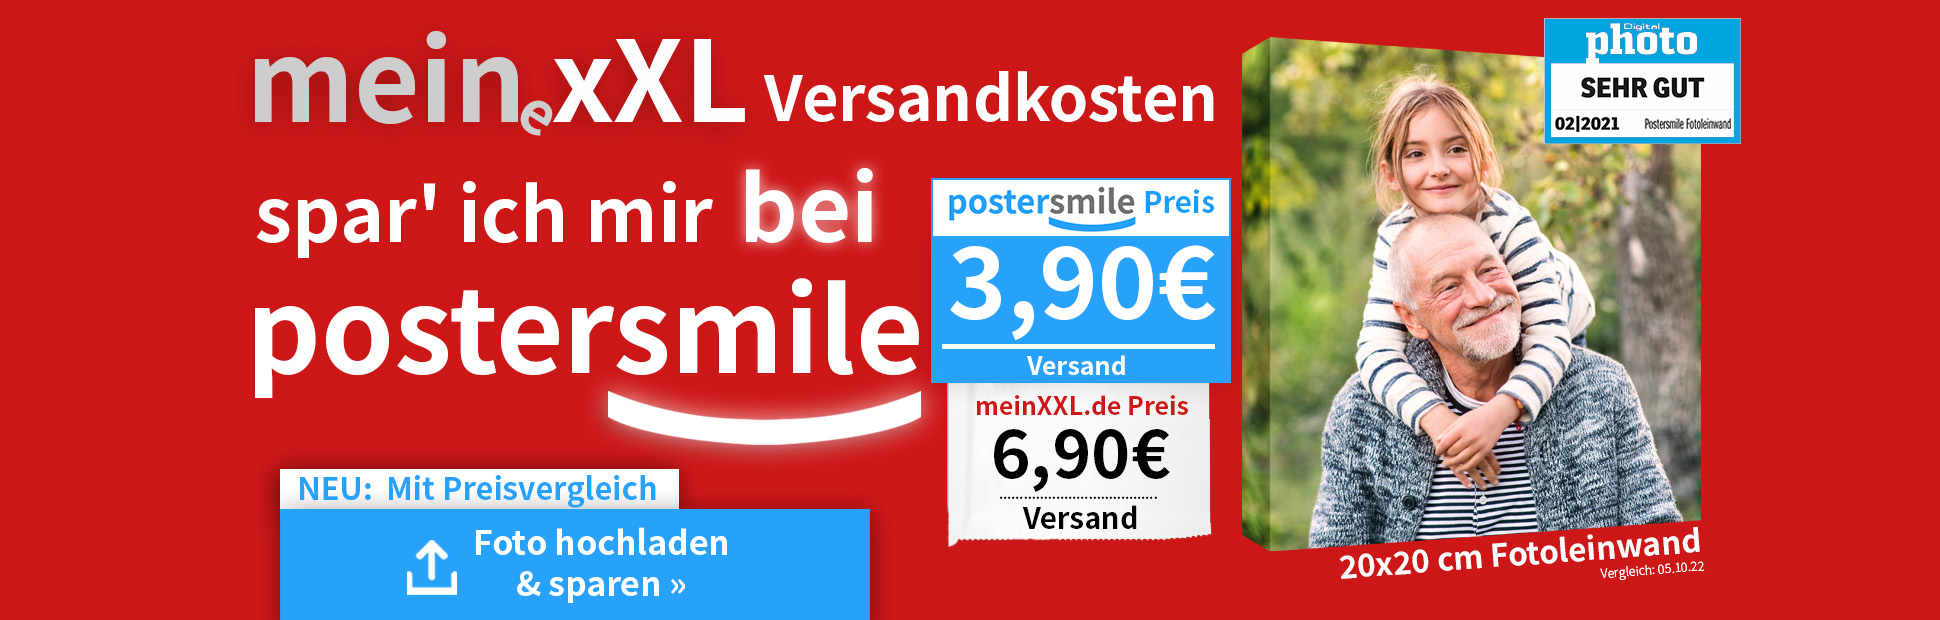 Fotoleinwand günstig - Foto auf Leinwand Preisvergleich postersmile.de vs. meinxxl.de